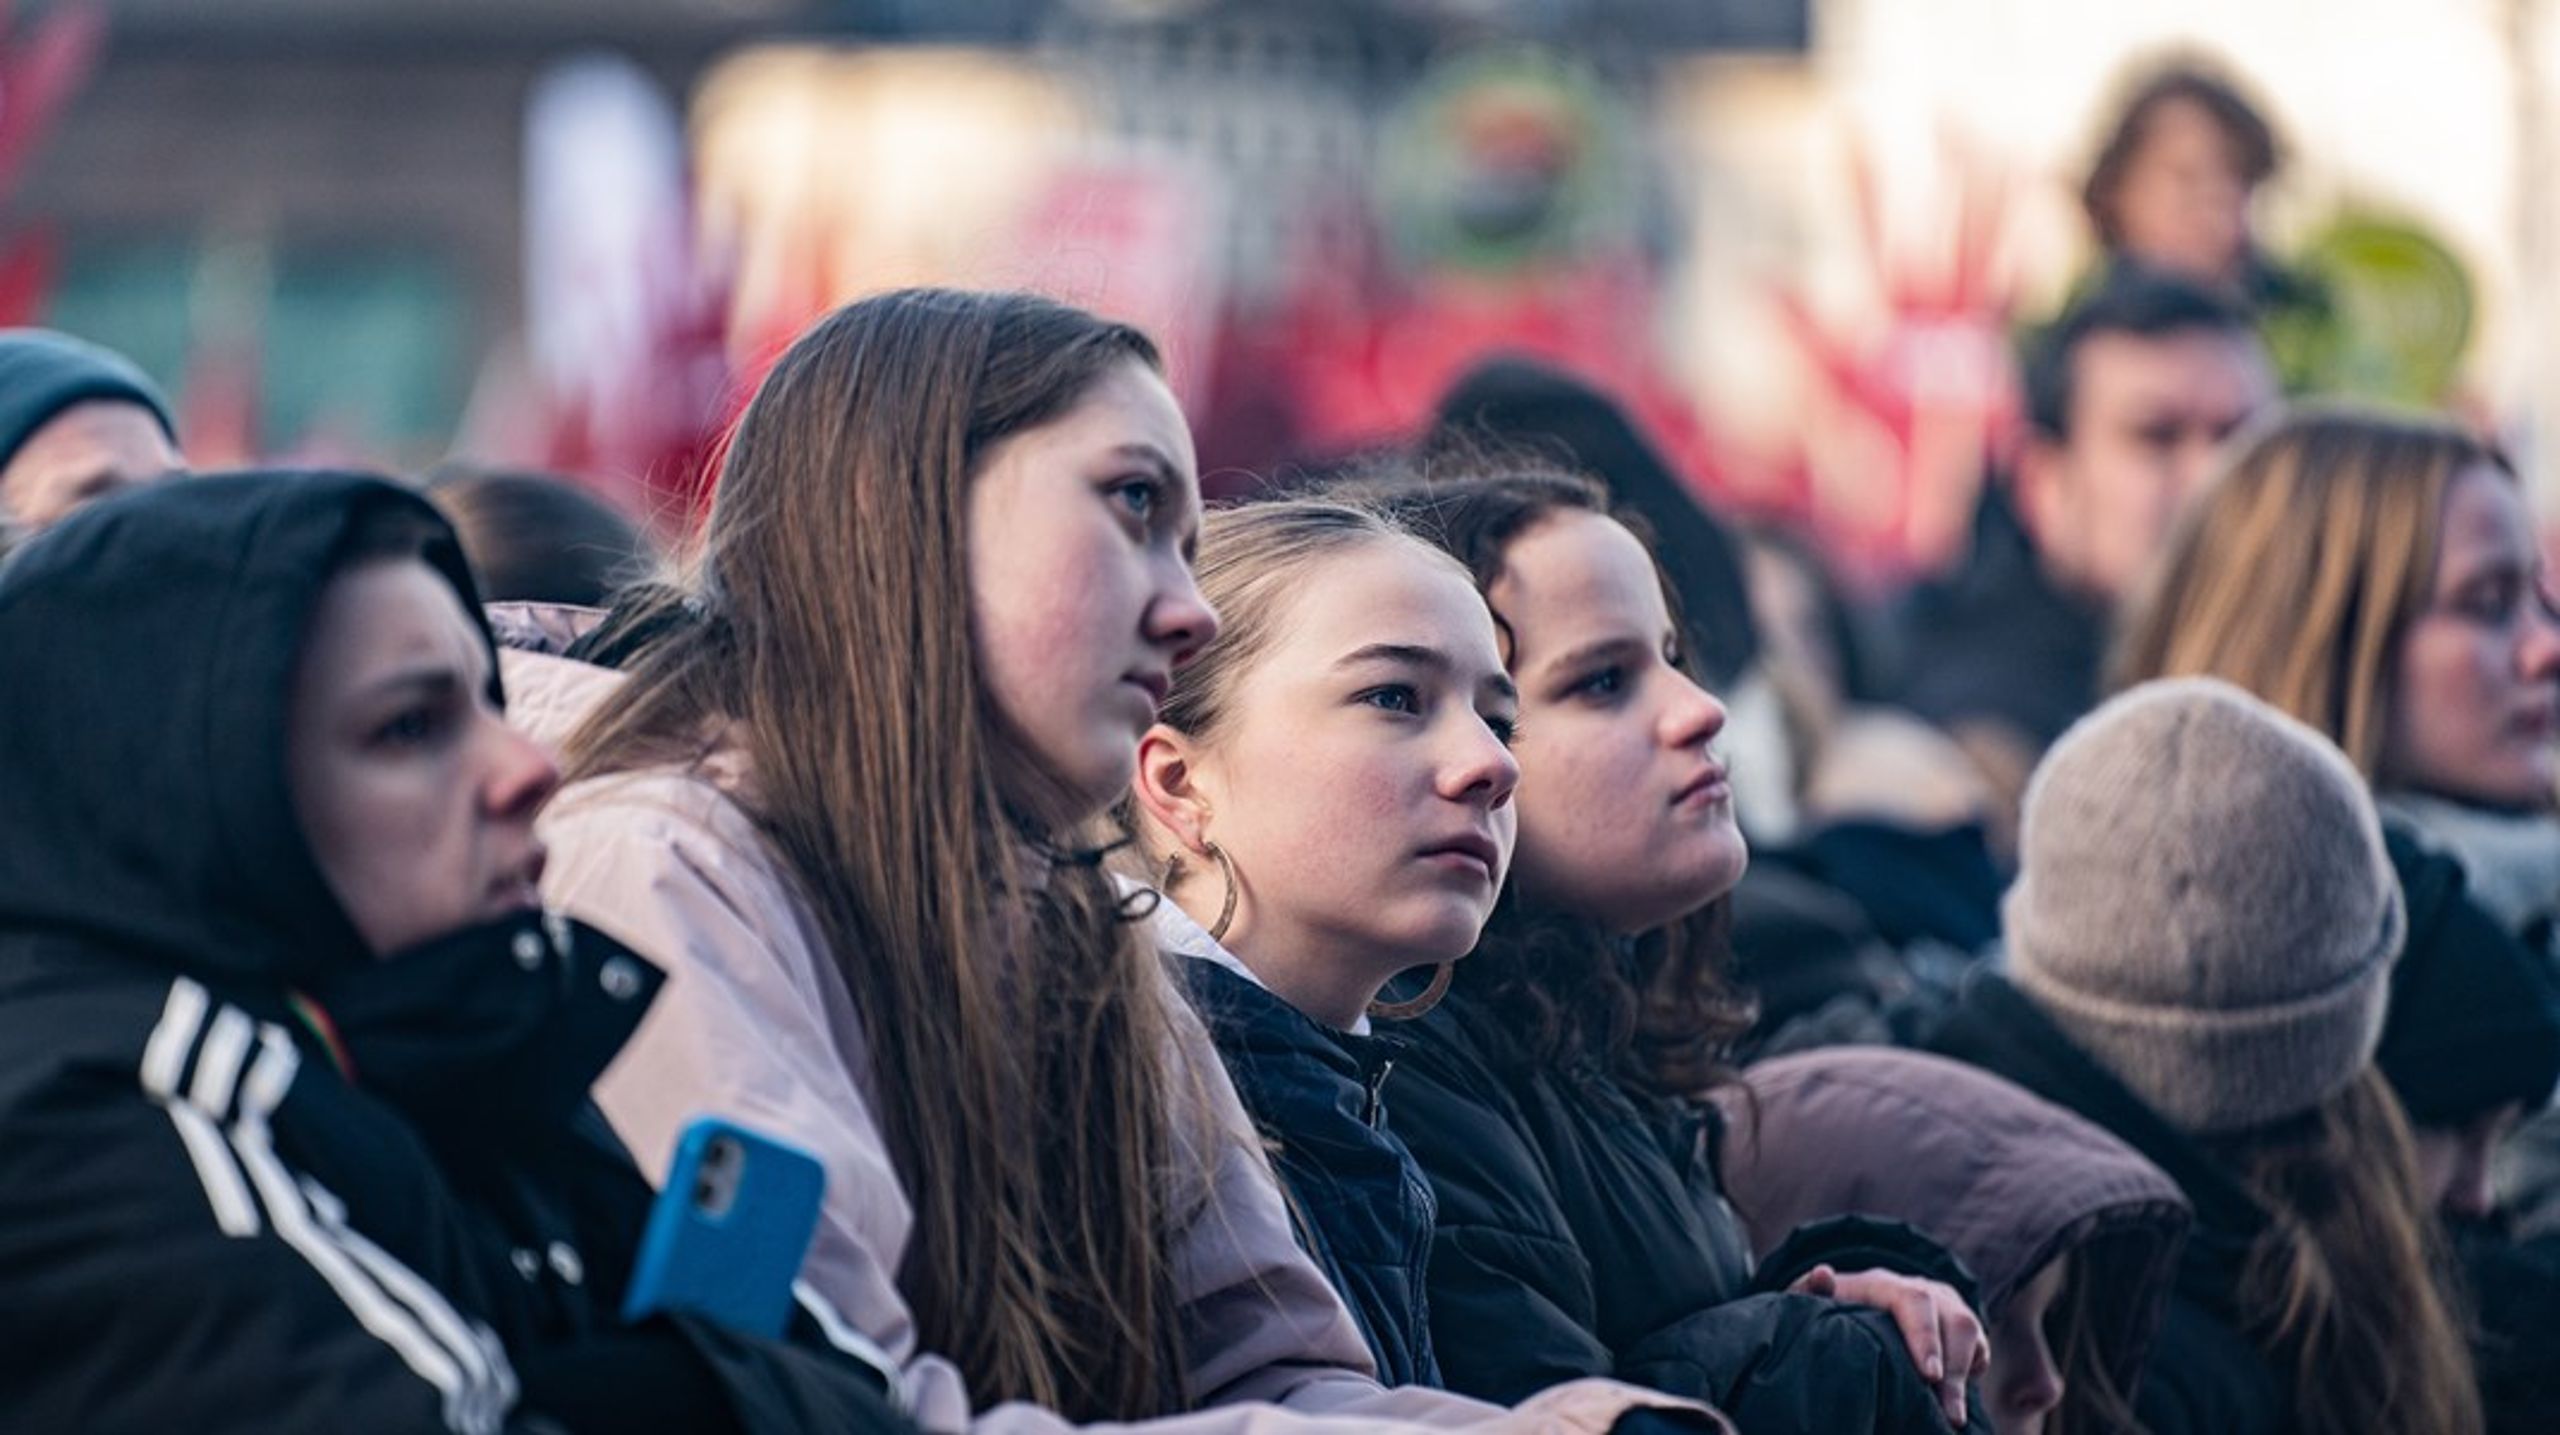 Hele 53 procent af unge mellem 16 og 25 føler ikke, at de har noget at
byde ind med i politiske diskussioner, at de kan forstå politiske spørgsmål eller
at de har politiske holdninger, som er værd at lytte til, skriver Morten Gade.&nbsp;